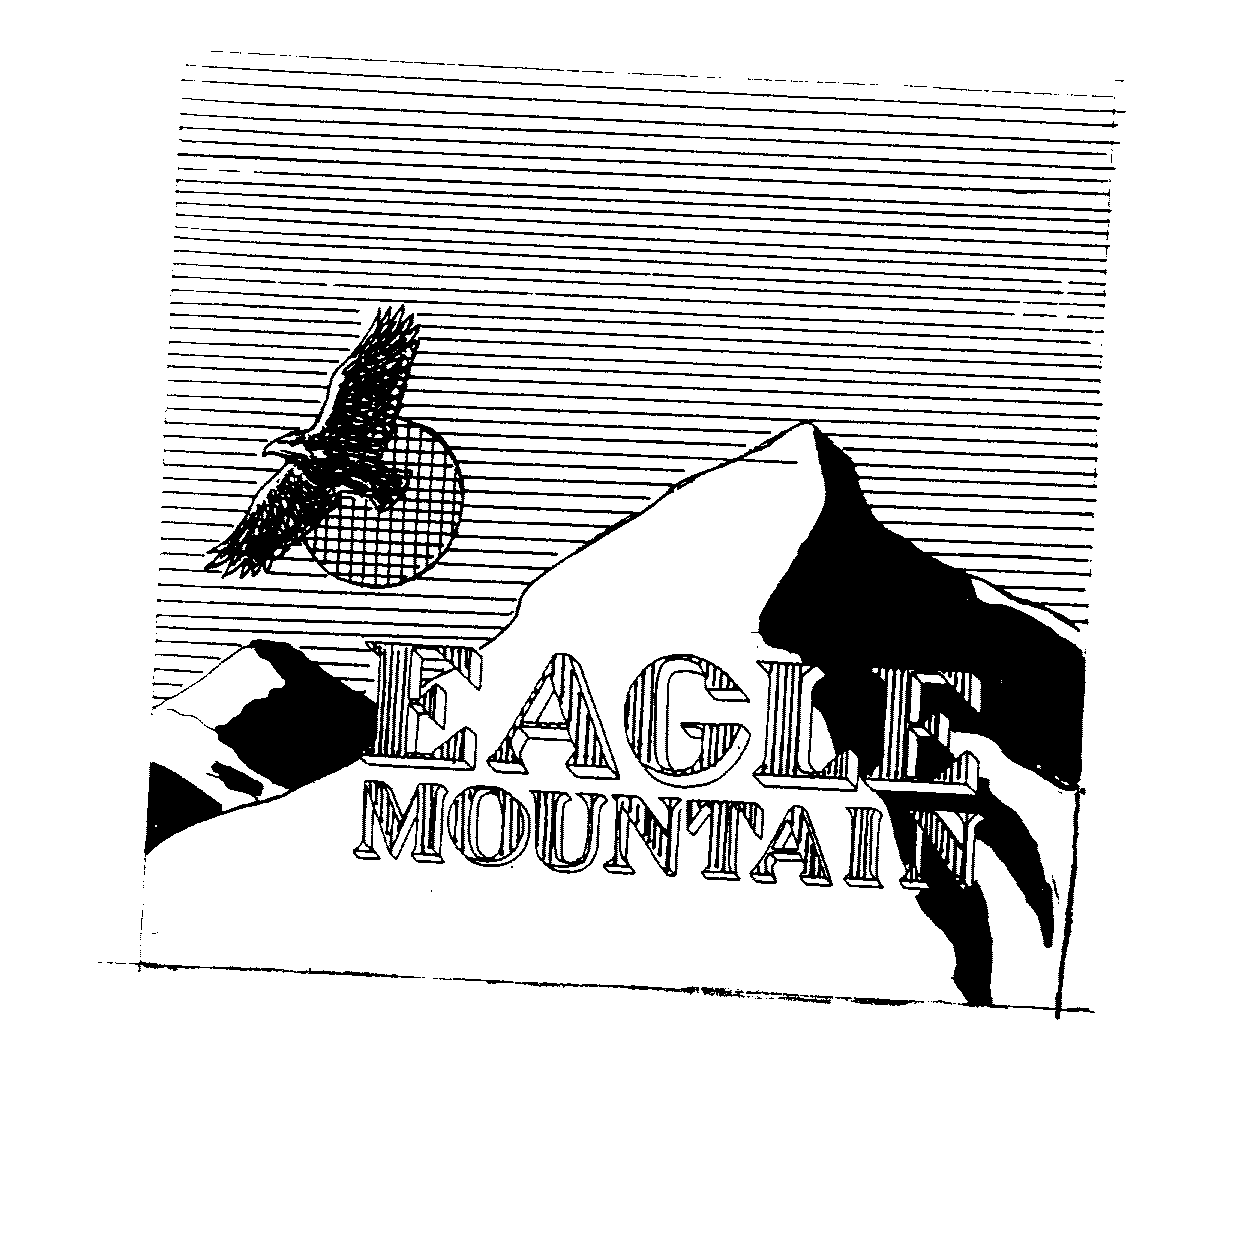 Trademark Logo EAGLE MOUNTAIN